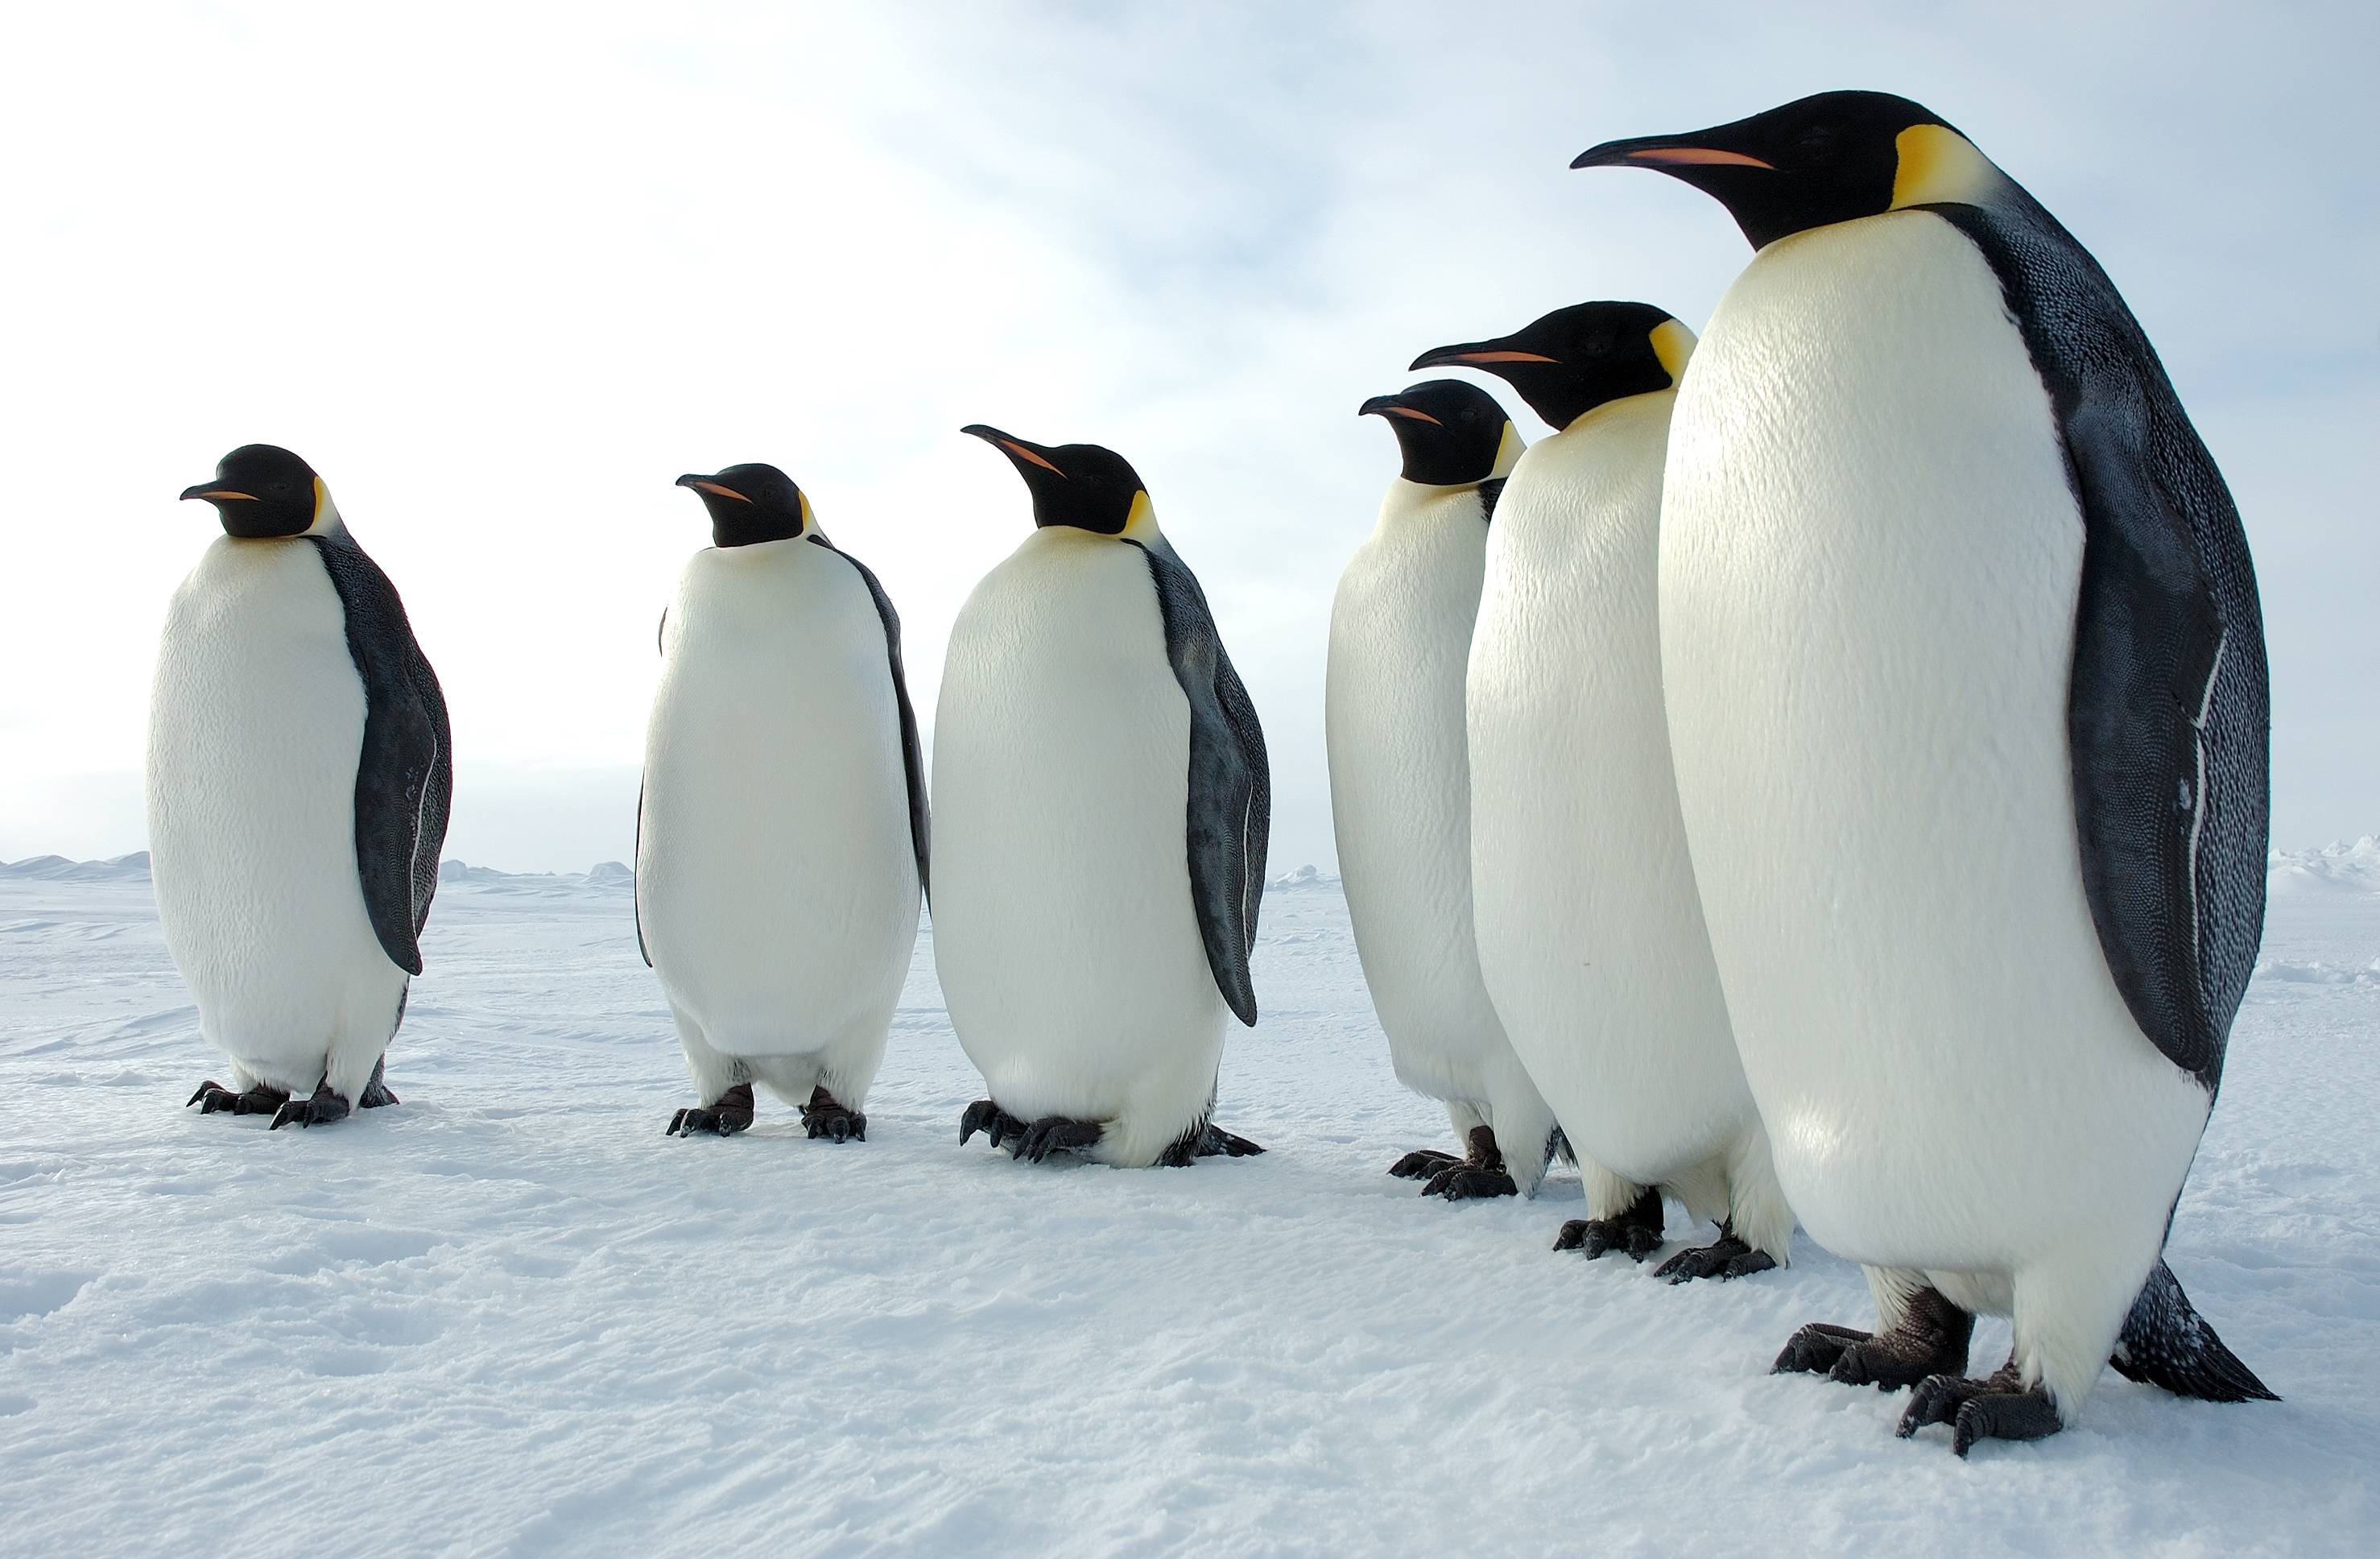 Free download wallpaper Birds, Animal, Penguin, Emperor Penguin on your PC desktop